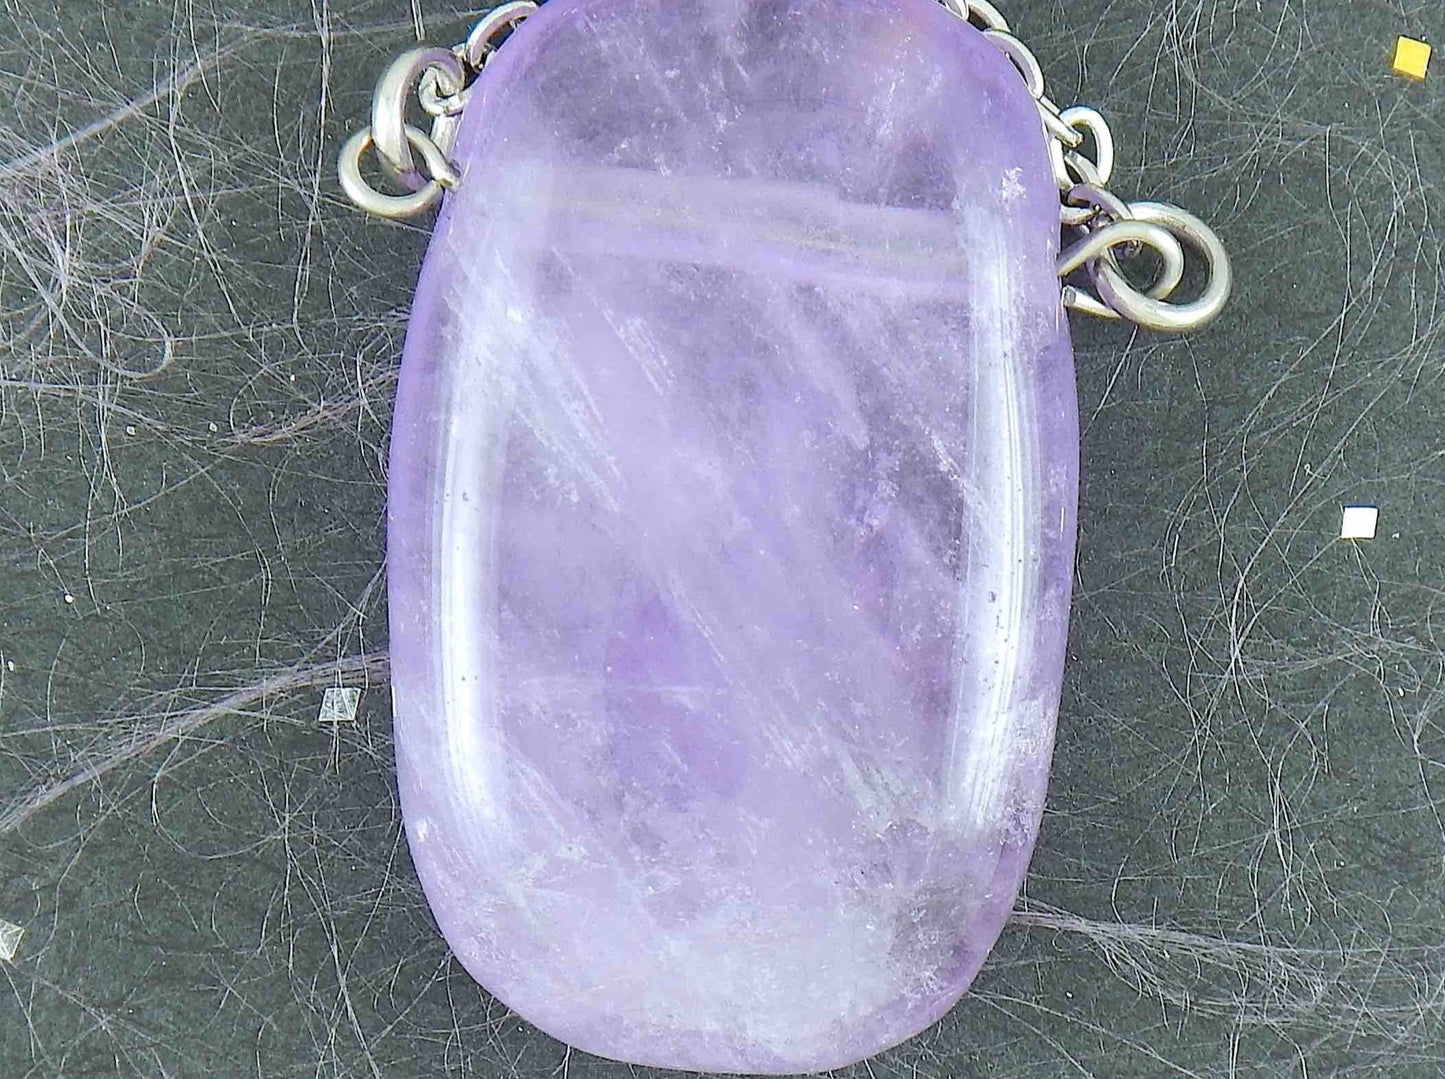 Collier 26 po à pendentif rectangle arrondi de pierre améthyste violet clair fumé, chaîne acier inoxydable